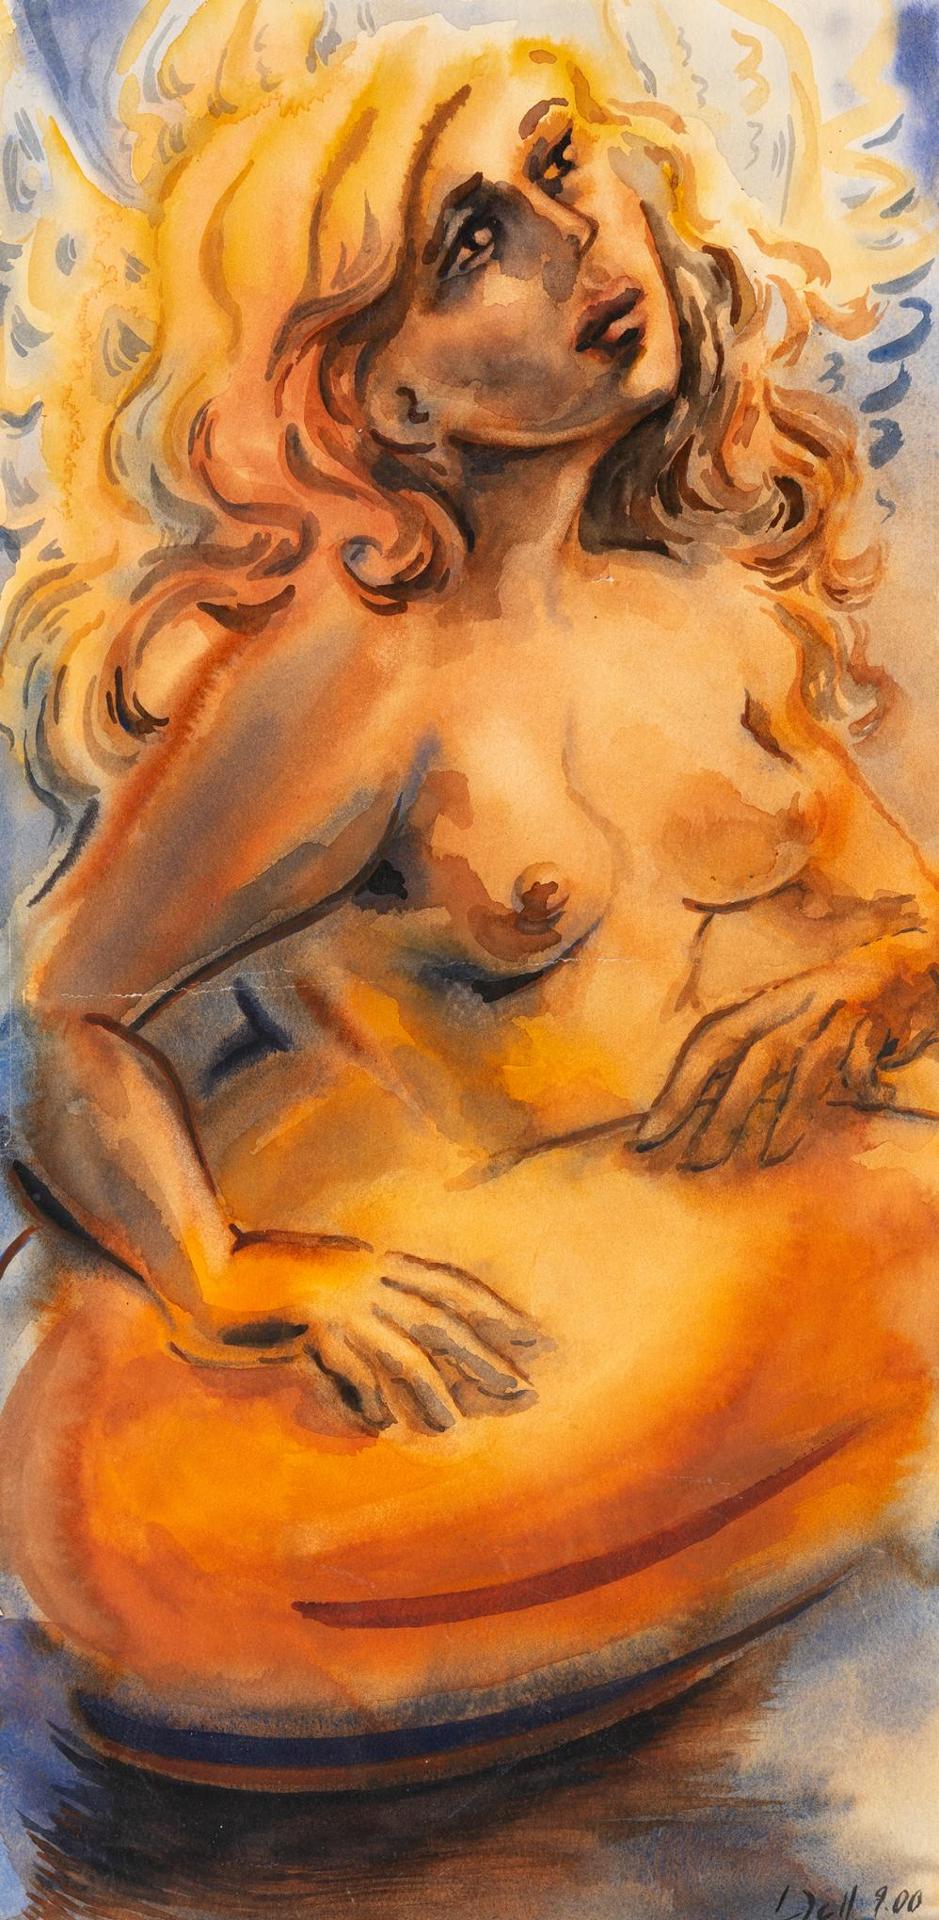 Lori Dell (1961) - Untitled - Nude